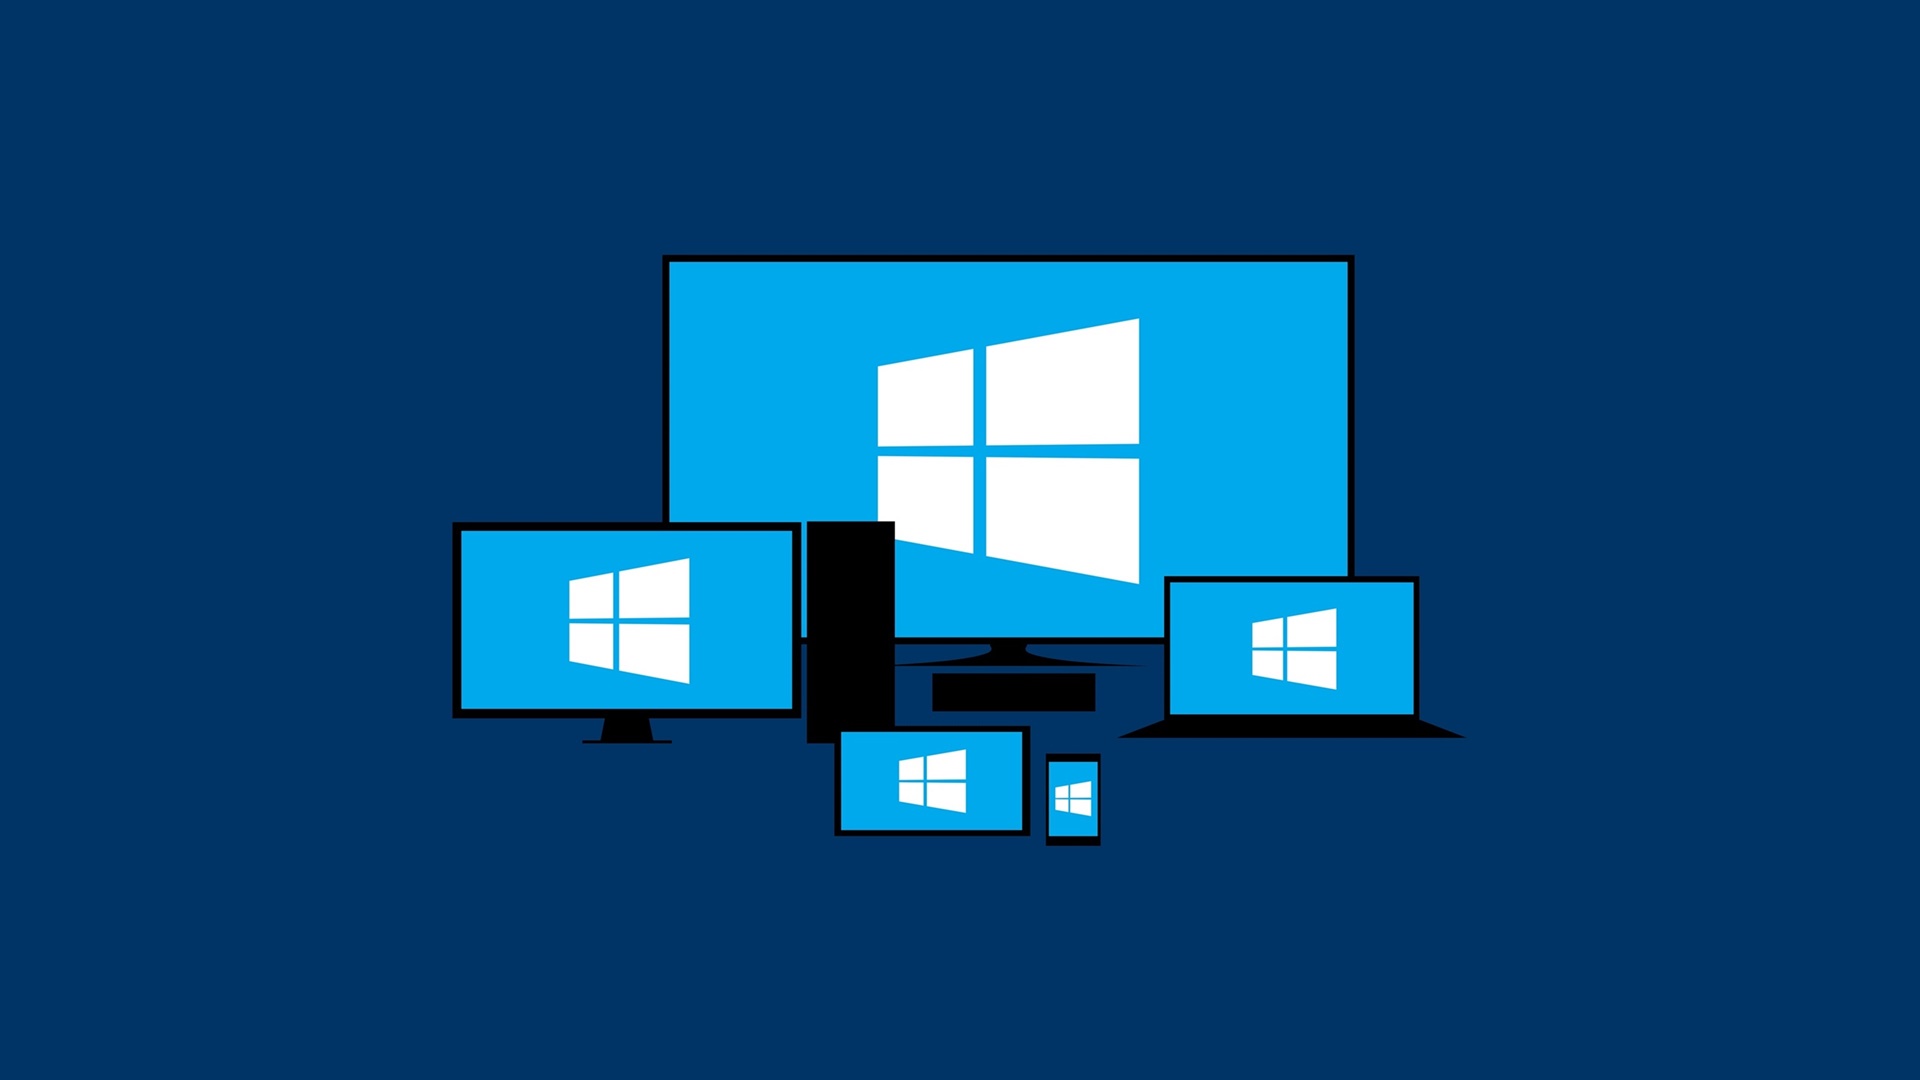 Bạn muốn thay đổi không gian máy tính với những hình nền độc đáo? Hãy xem các hình nền Windows 10 thú vị này, chắc chắn sẽ làm máy tính của bạn trở nên bắt mắt và độc đáo hơn bao giờ hết.